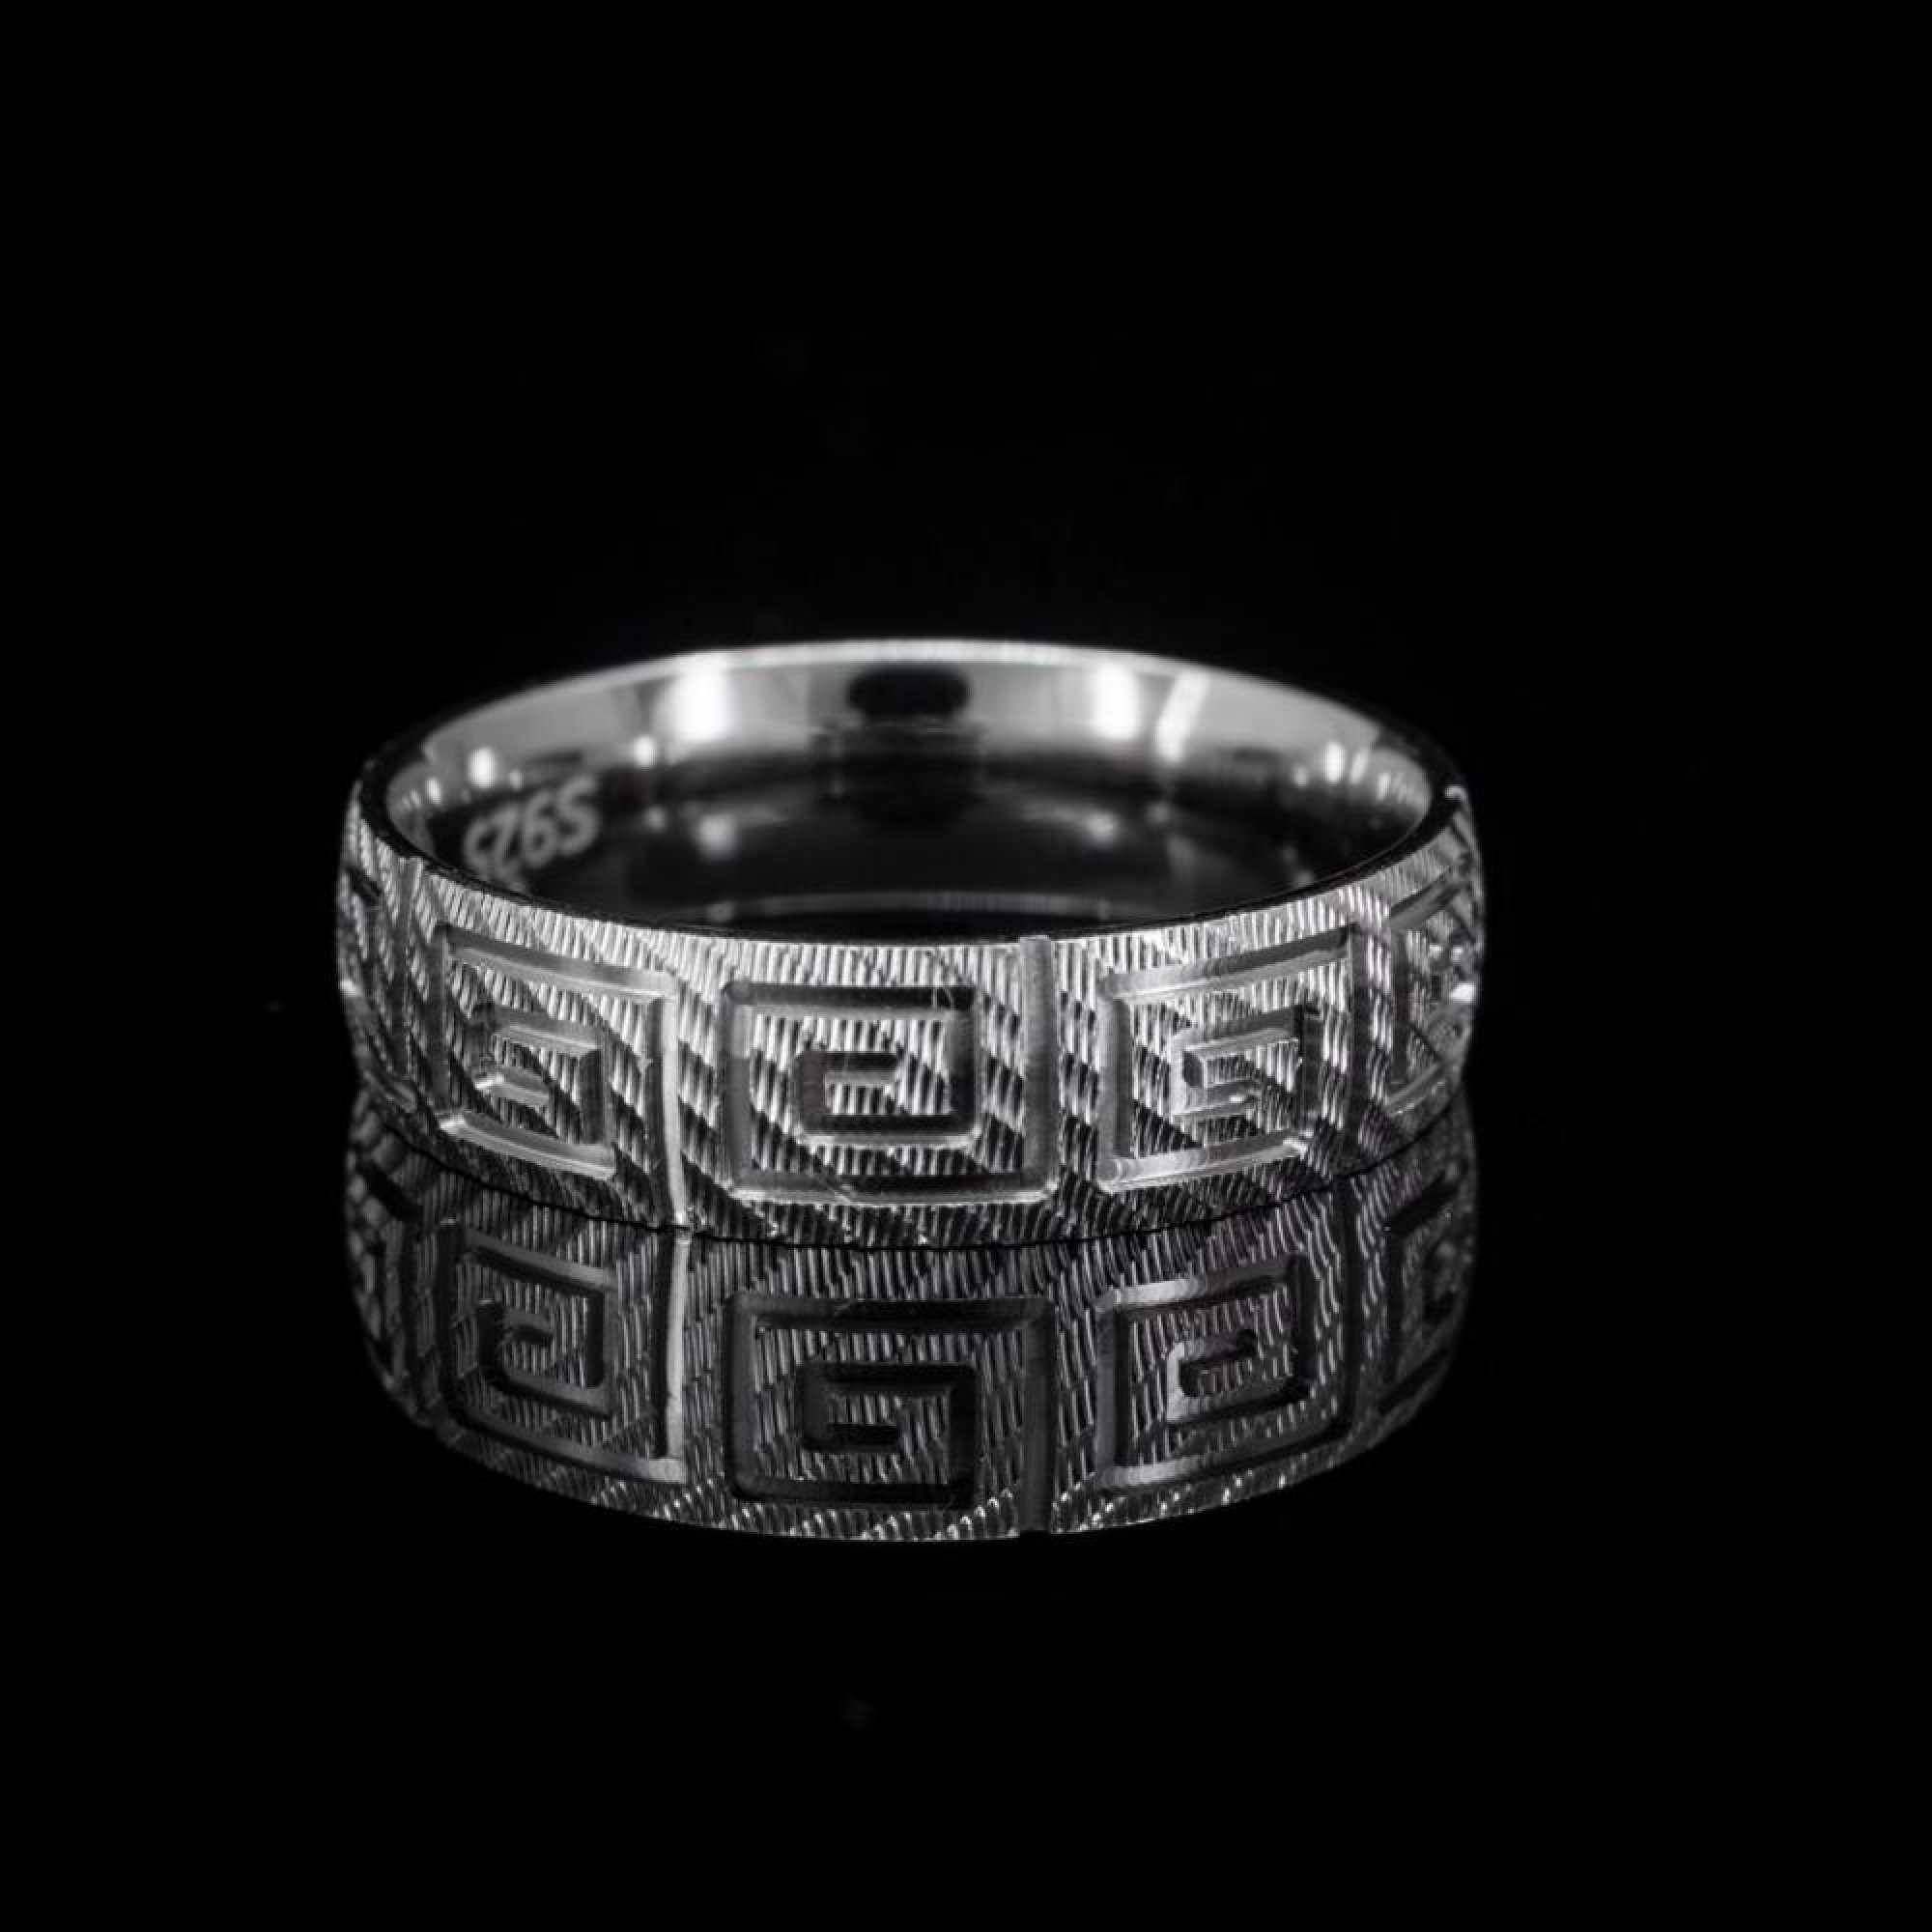 Engraved meander ring